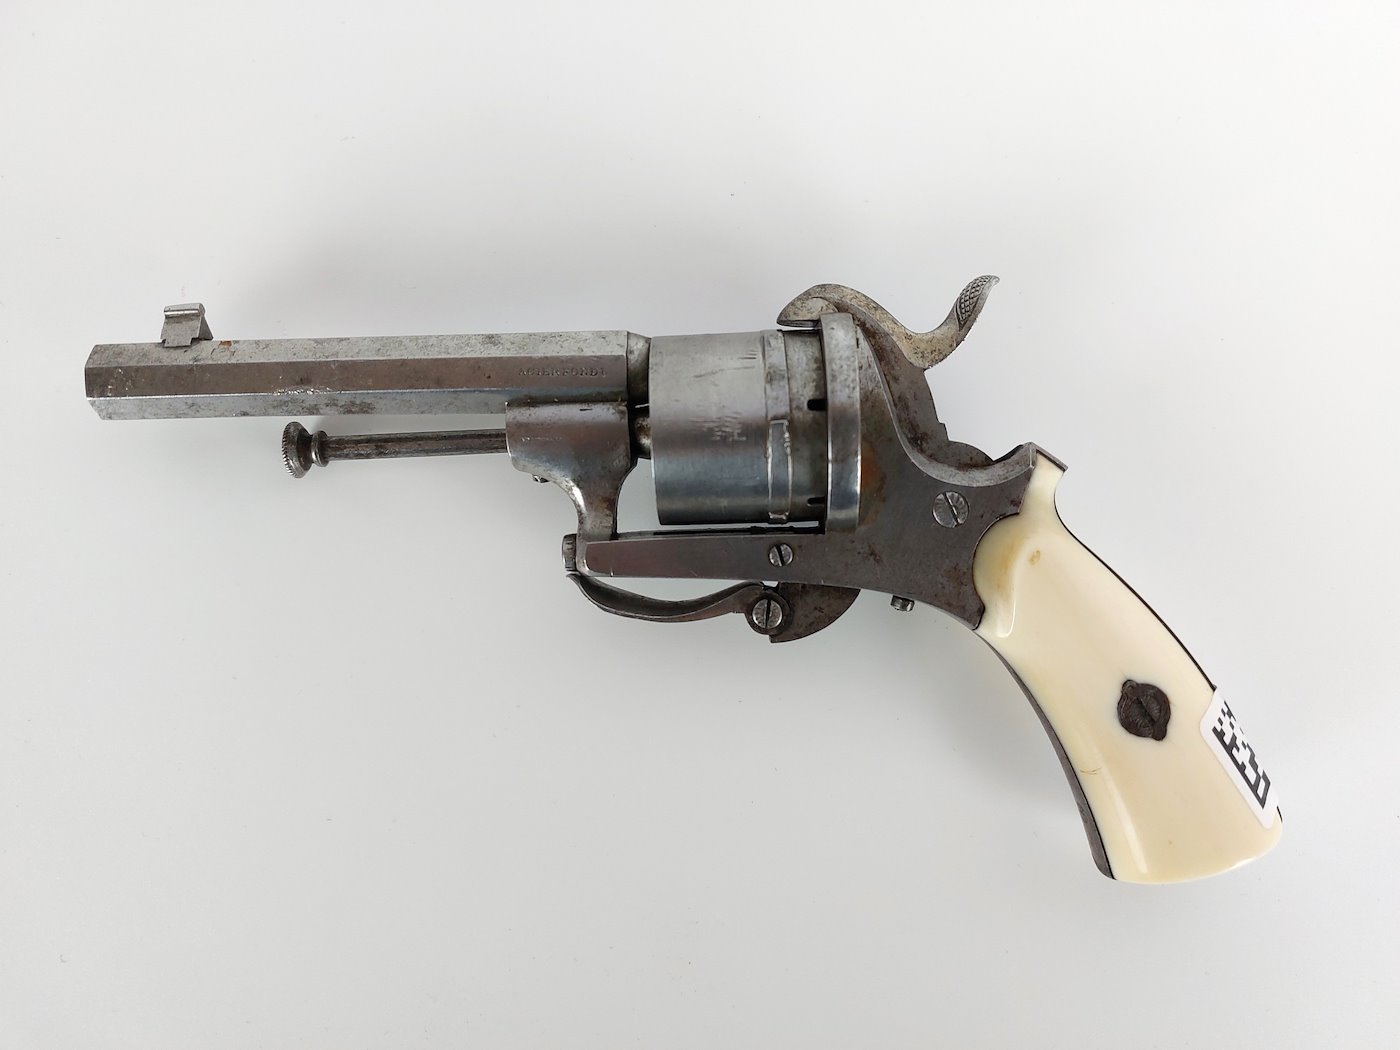 Neznámý autor - Revolver systému lefaucheux, značeno Acierfondu